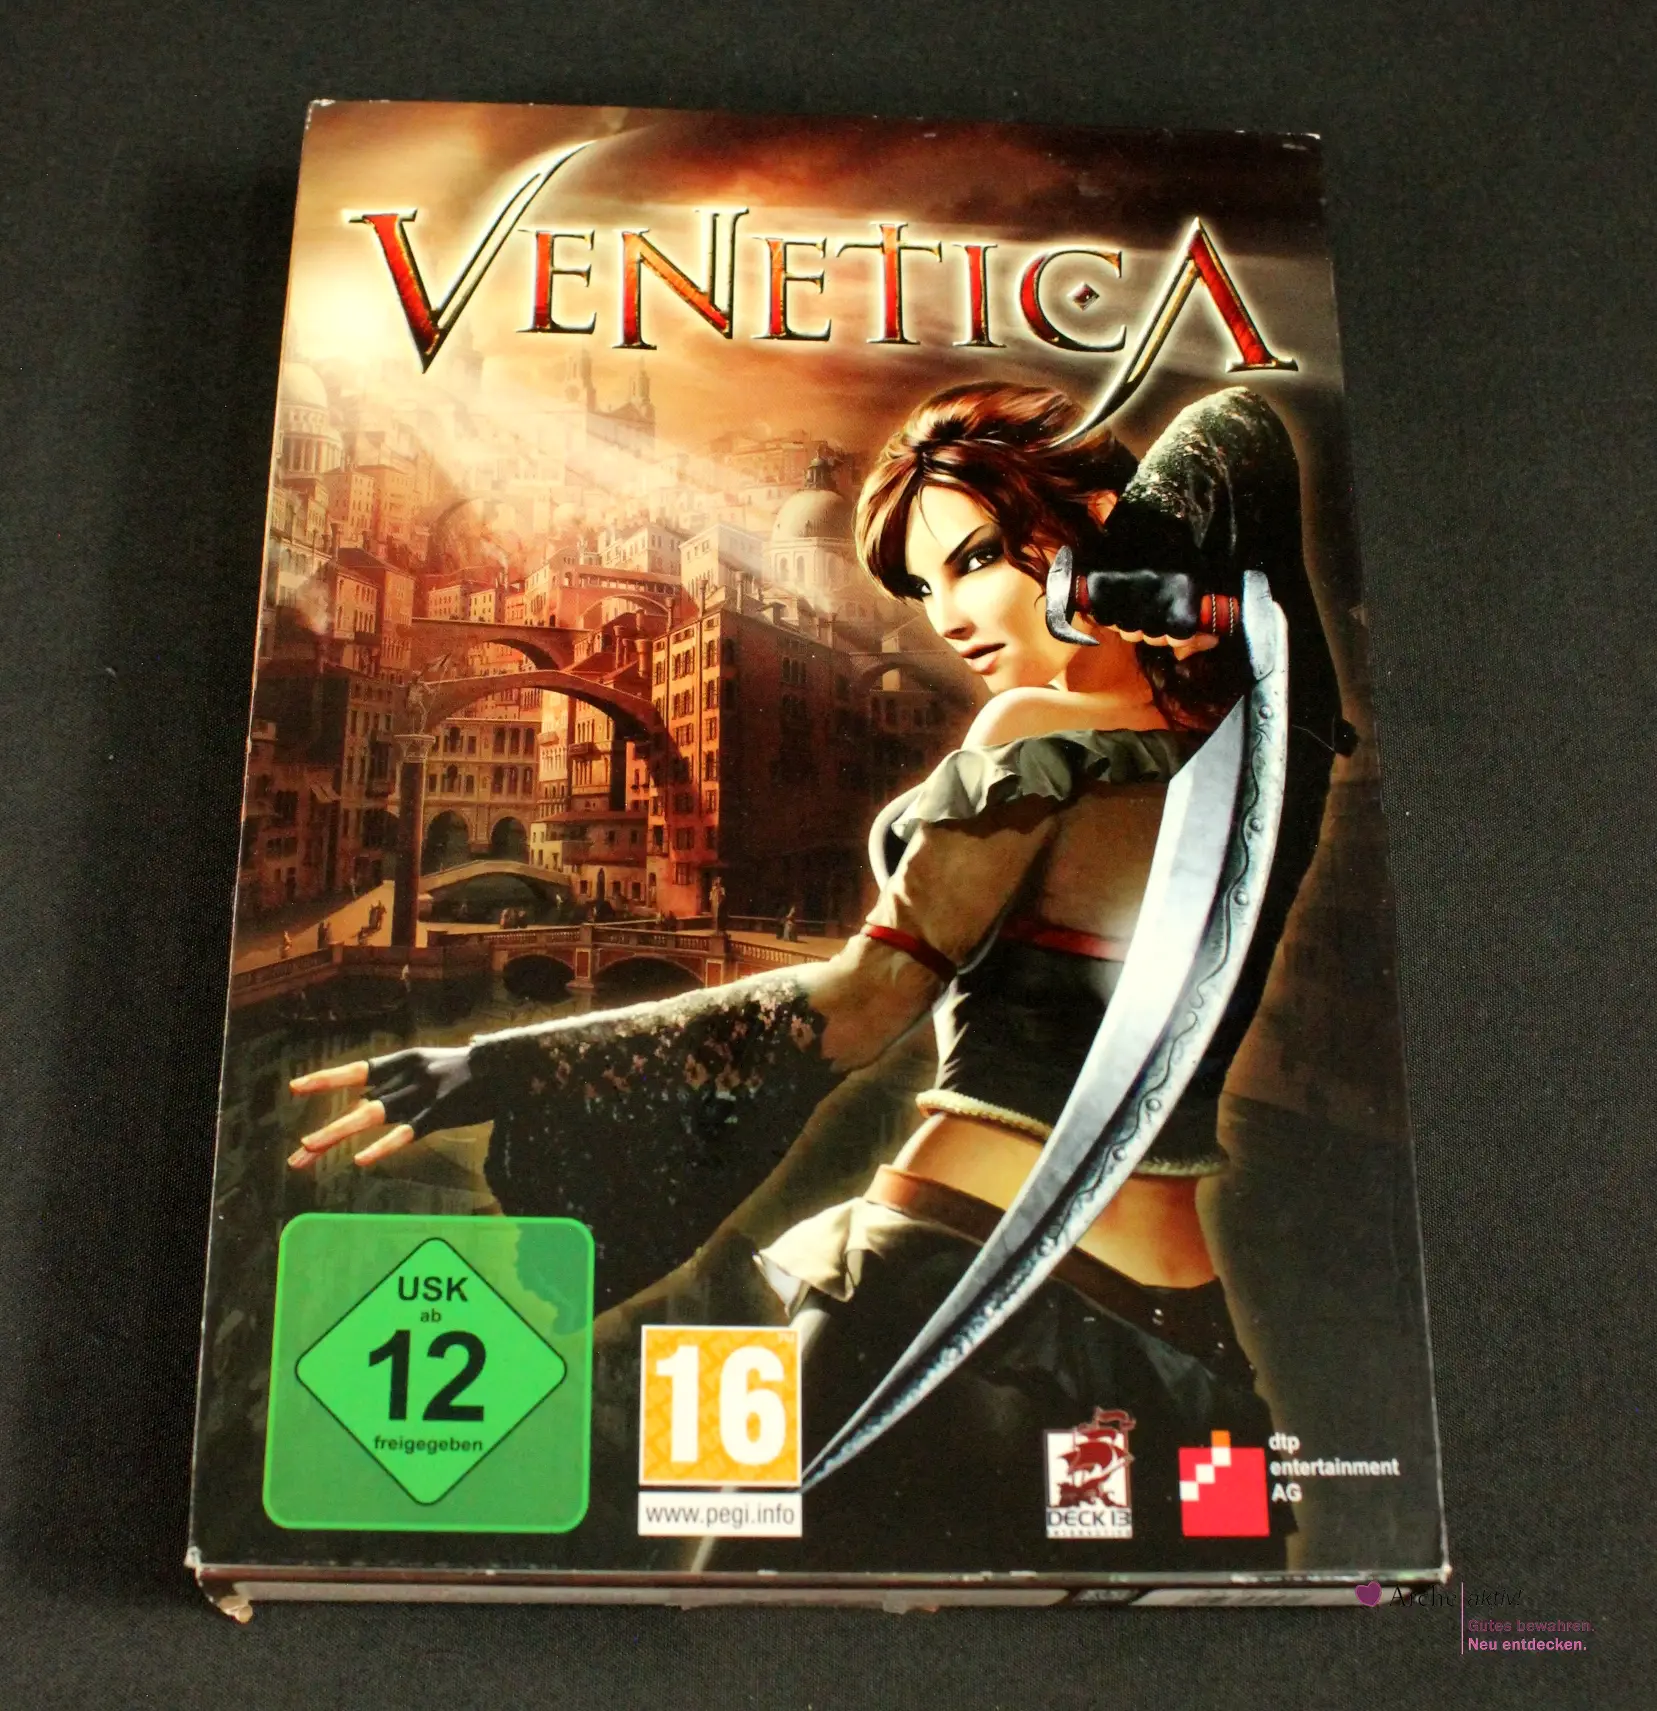 Venetica - PC DVD-ROM, Neu in OVP